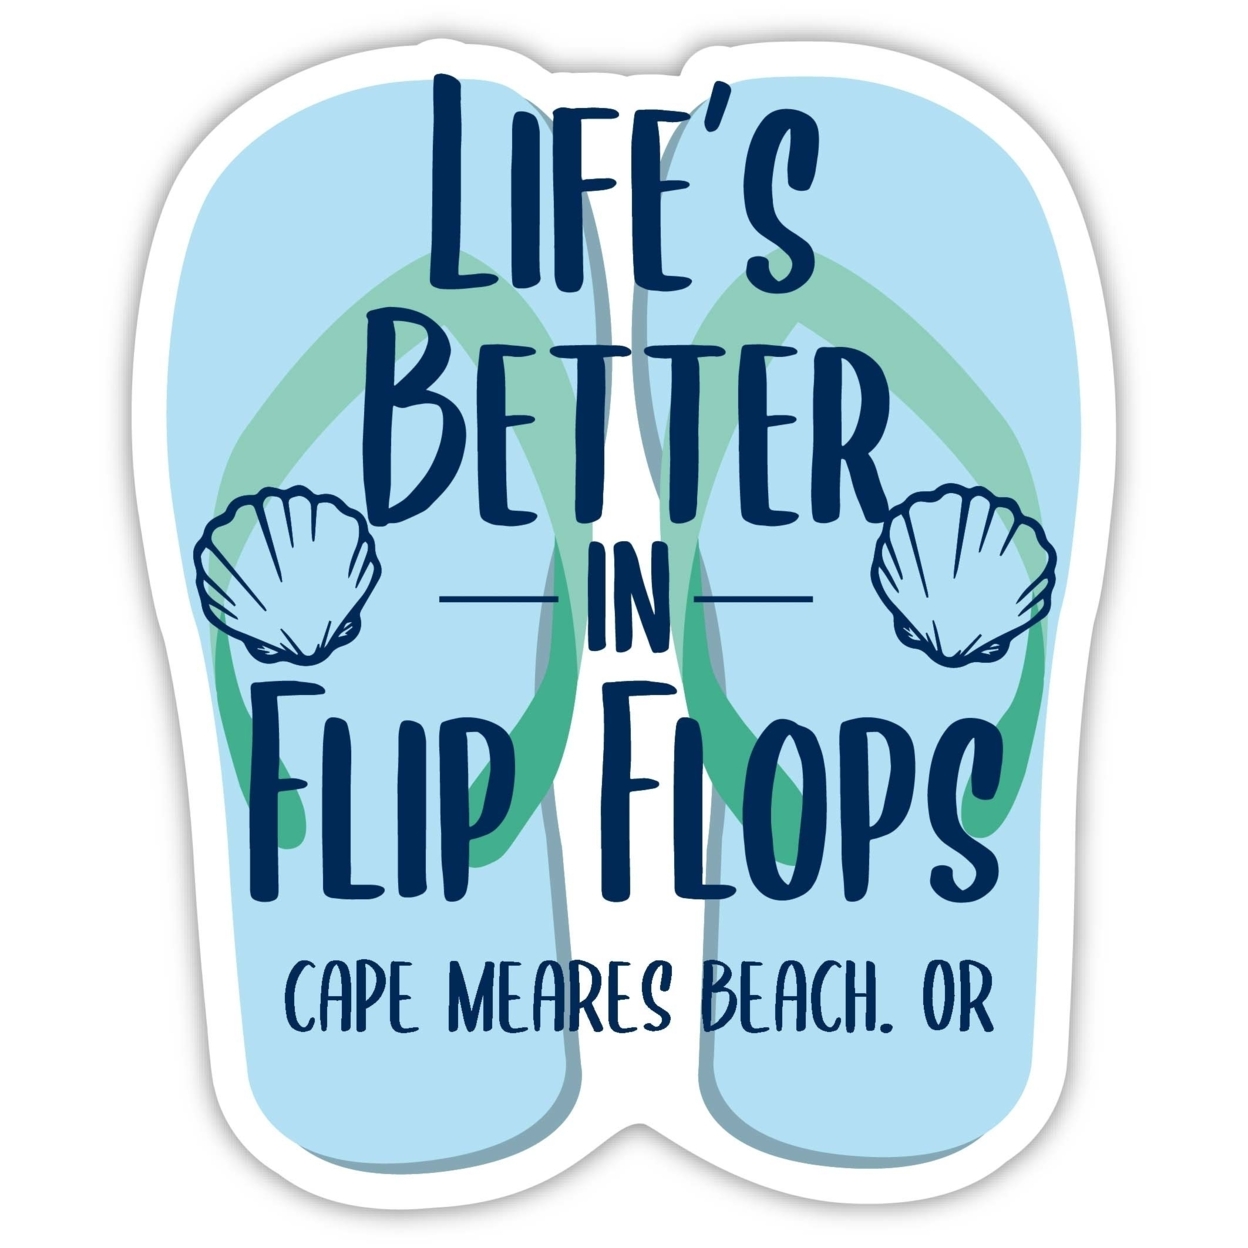 Cape Meares Beach Oregon Souvenir 4 Inch Vinyl Decal Sticker Flip Flop Design